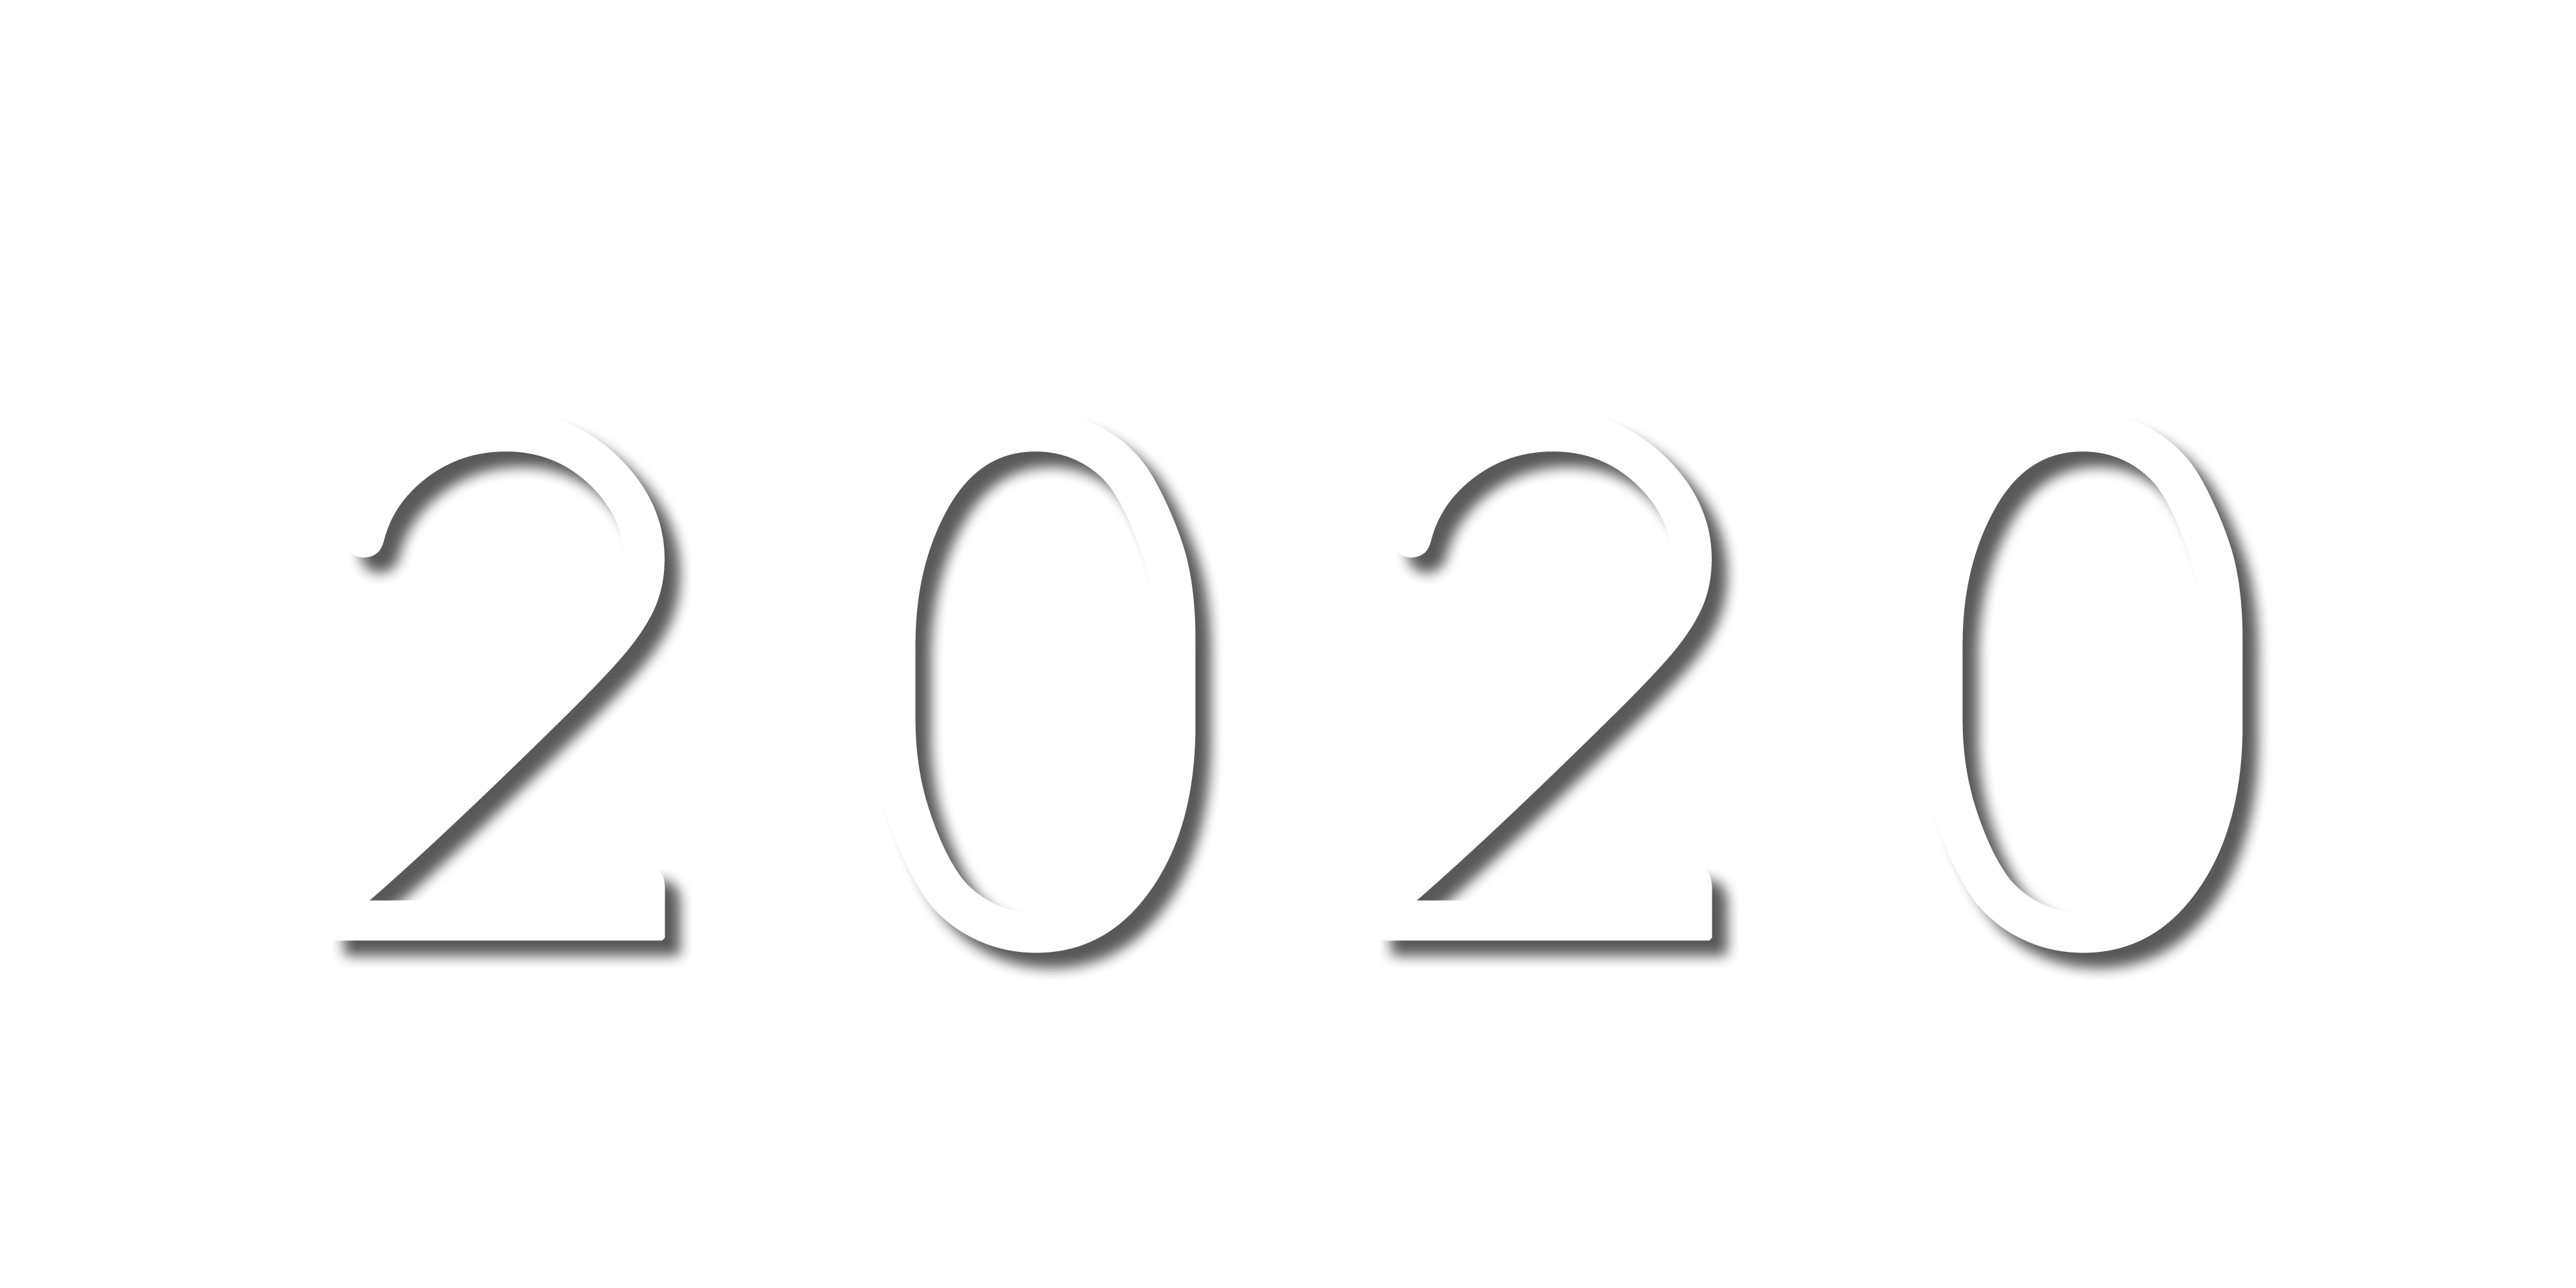 Ano de 2020